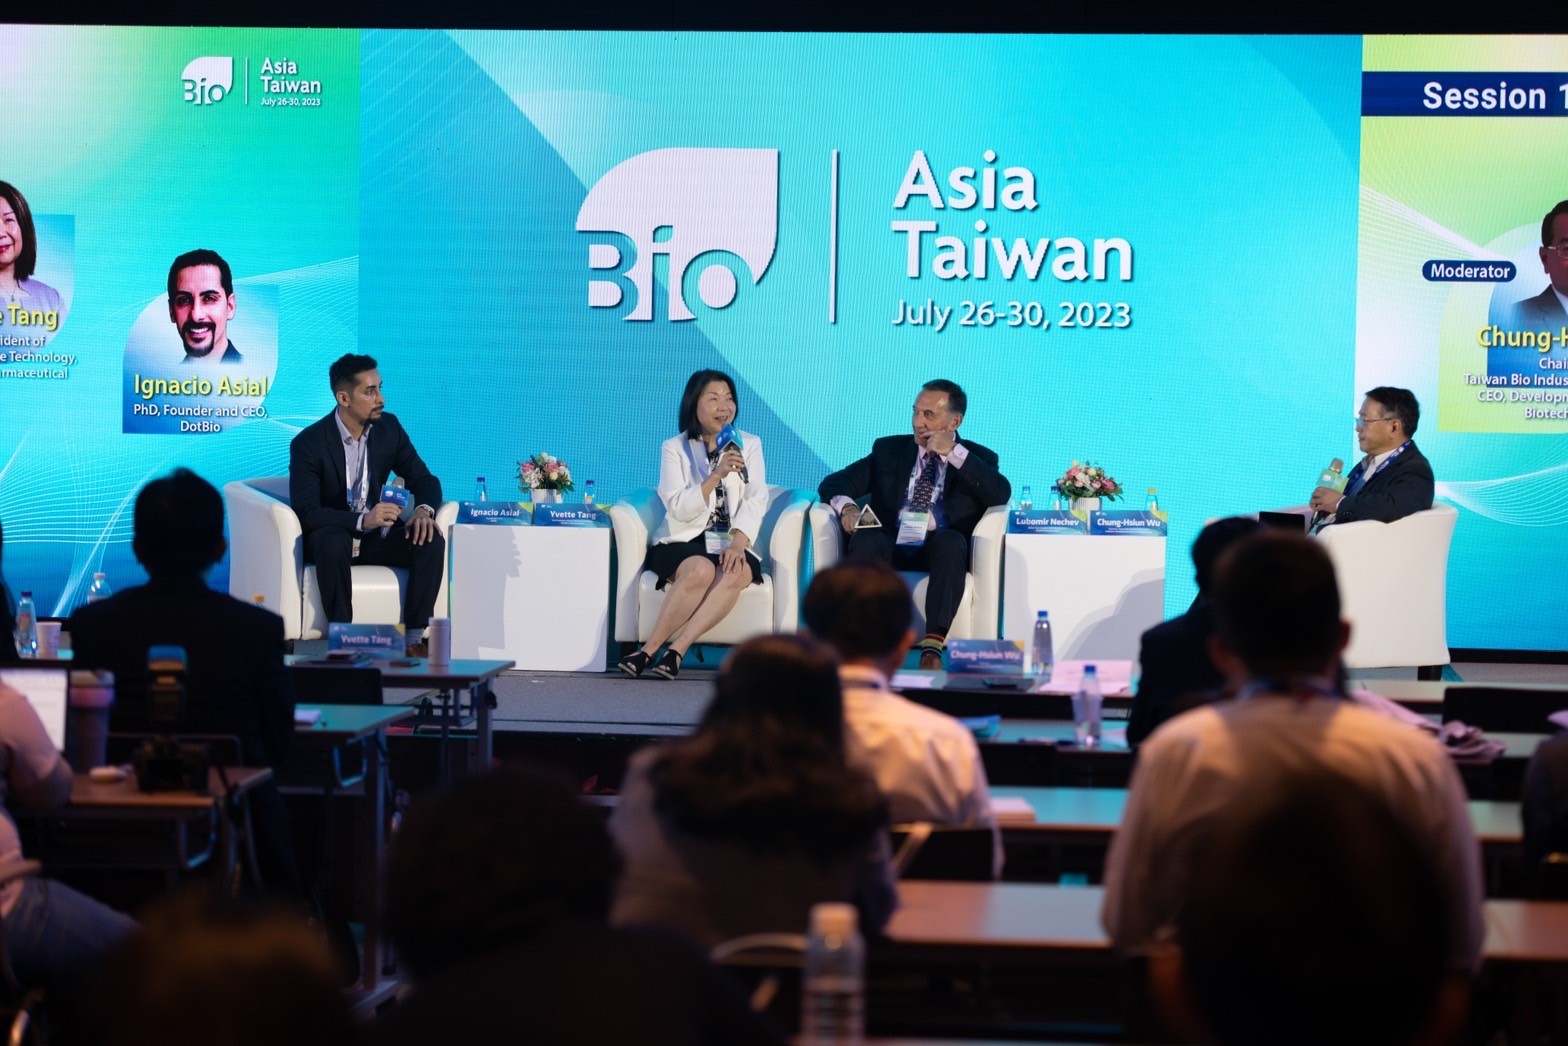 Bio Asia-Taiwan 國際論壇 活動照片